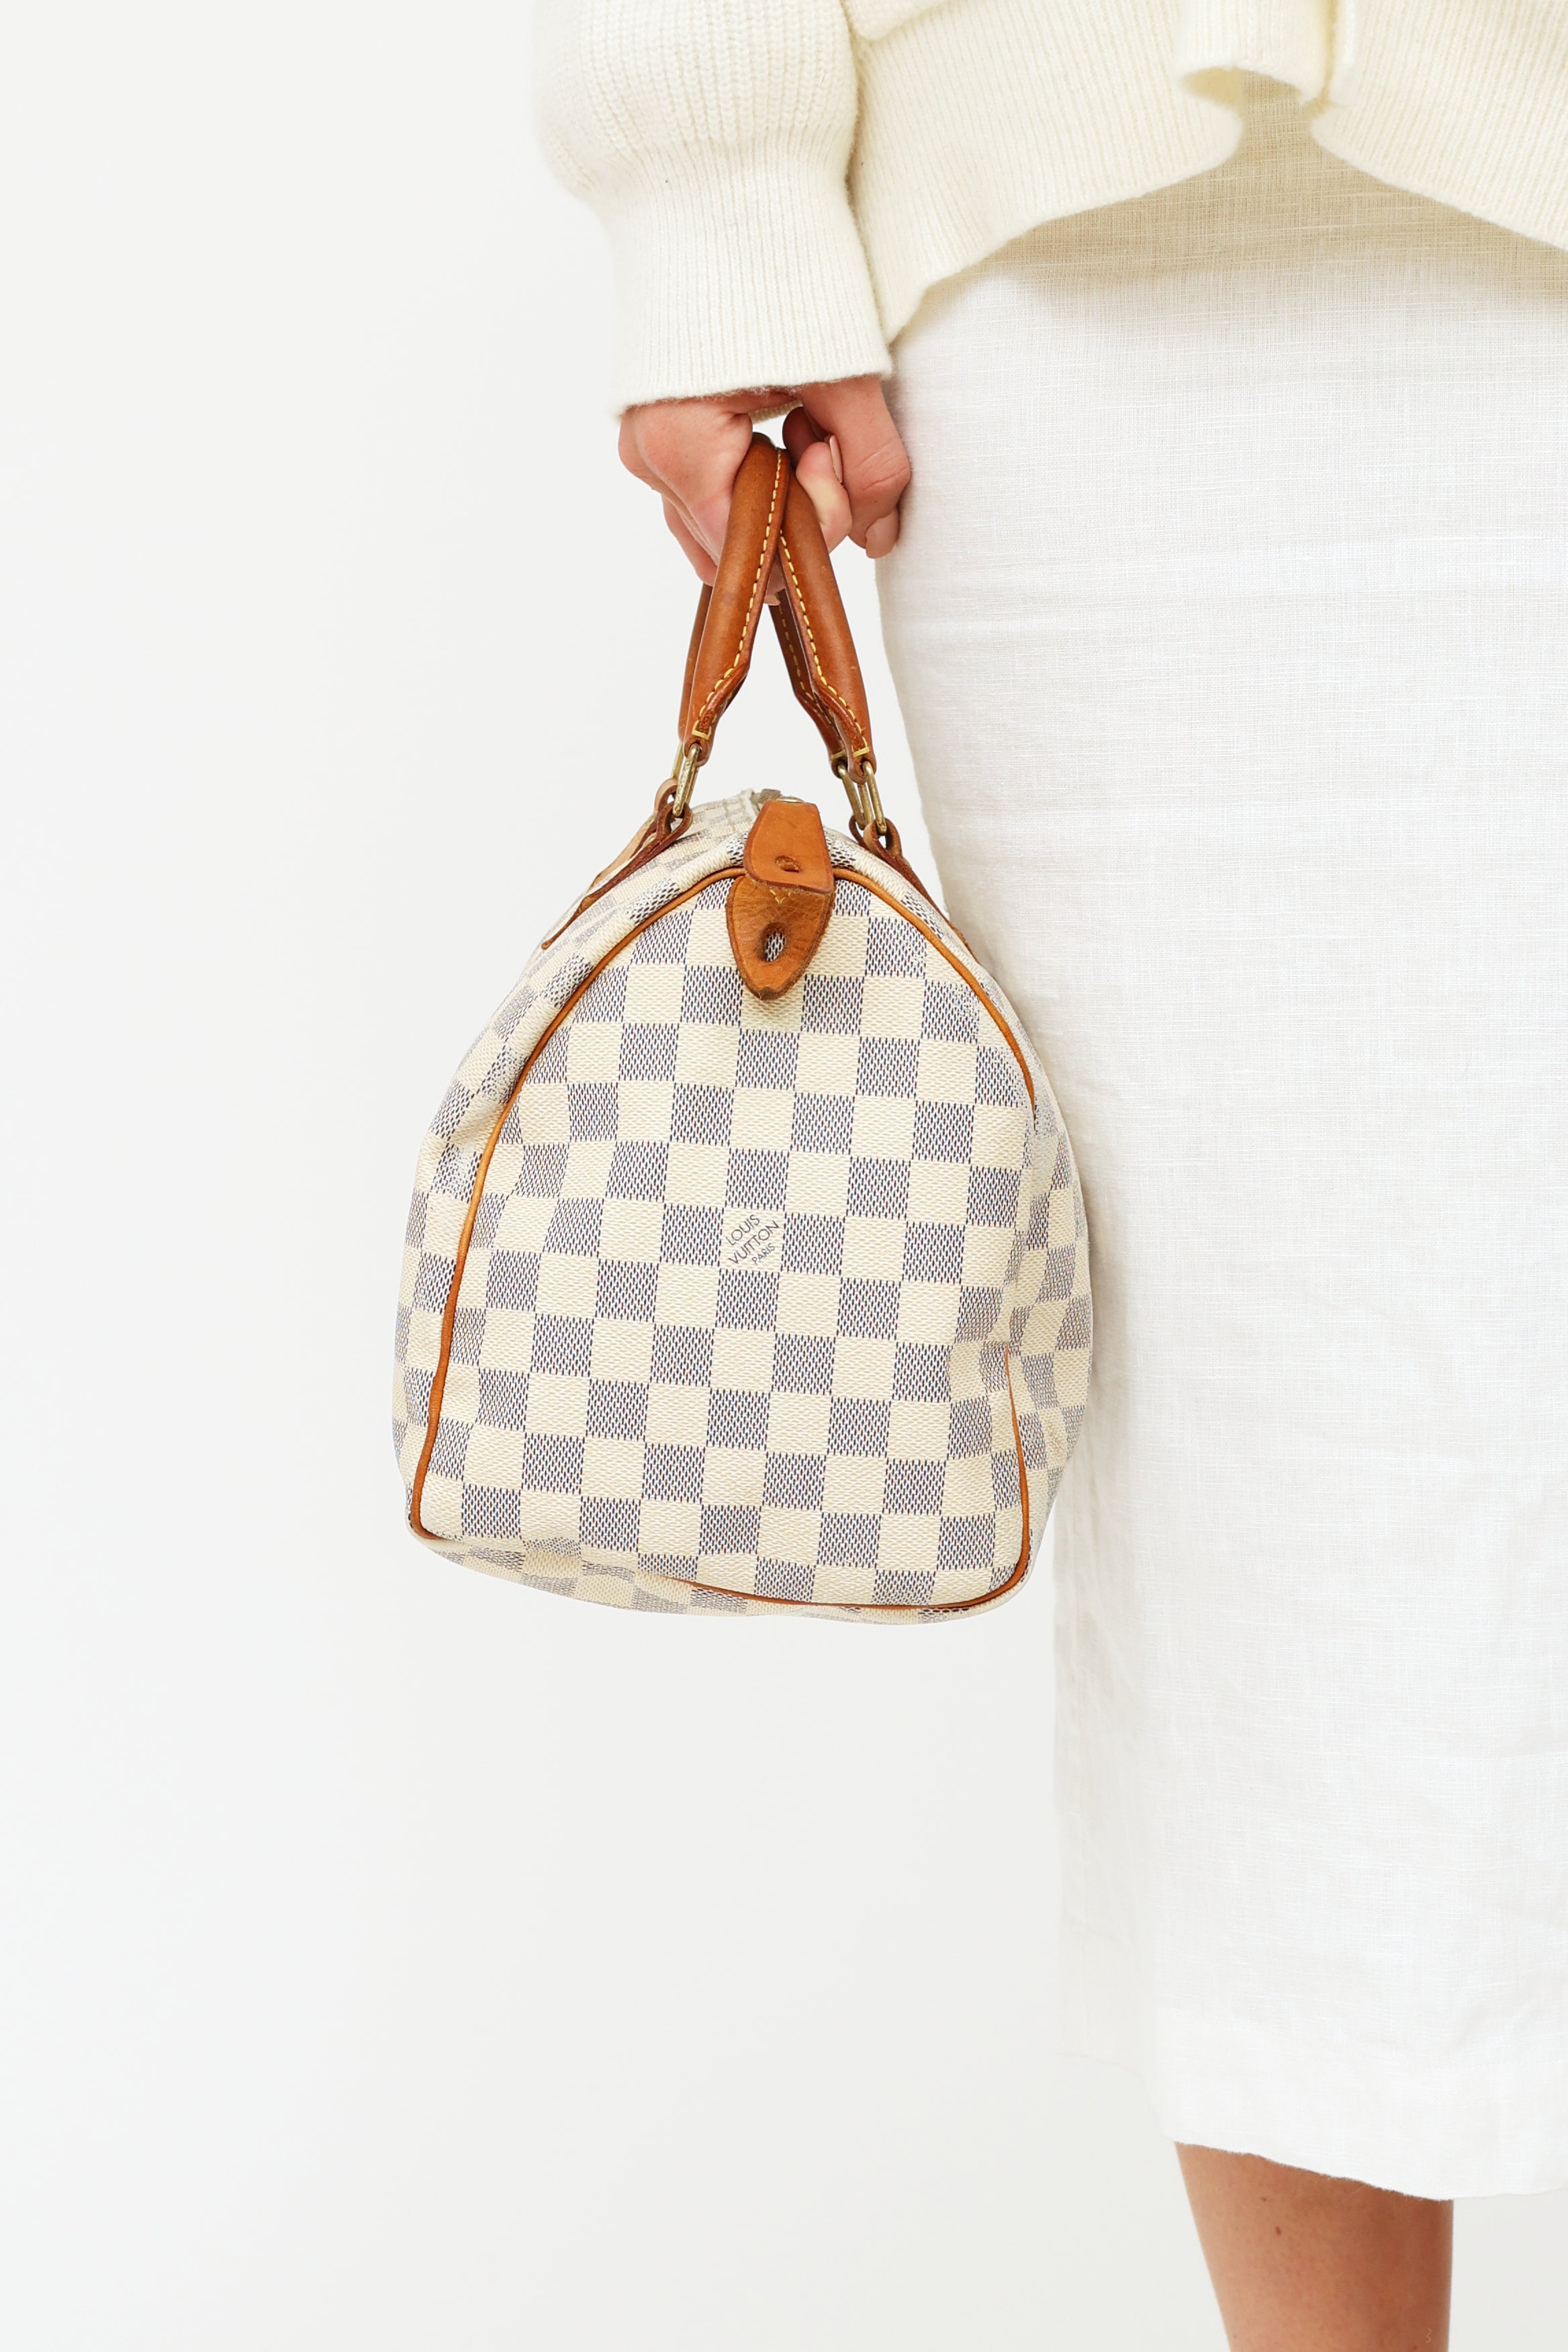 Speedy 30 w/Strap Damier Azur – Keeks Designer Handbags